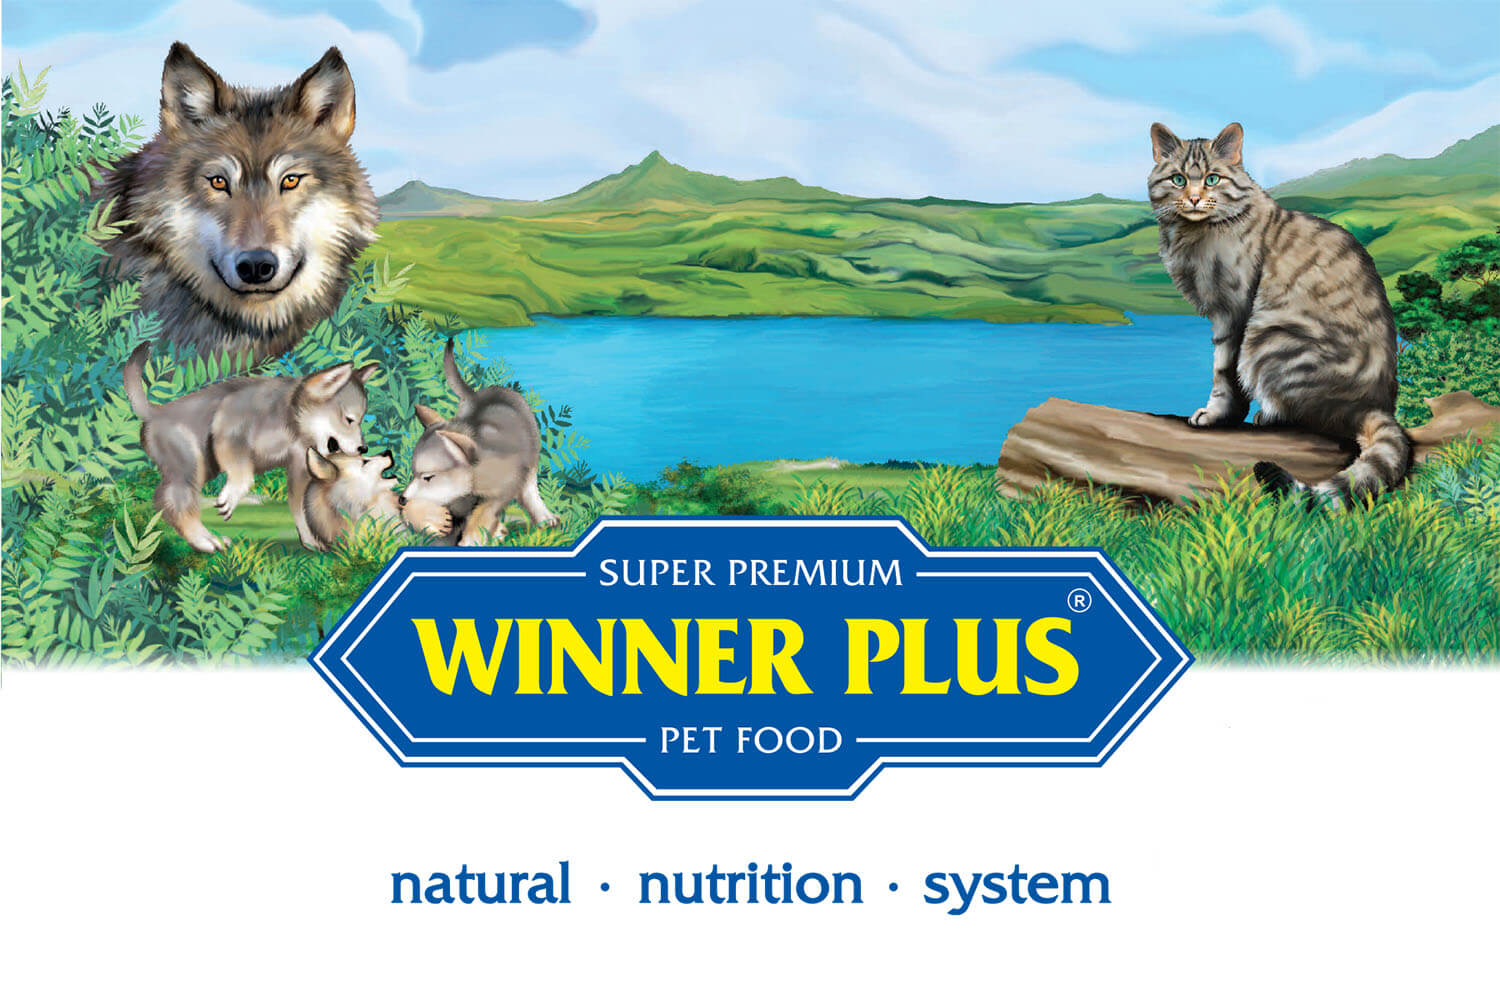 Η Argos pet products παρουσιάζει την super premium σειρά διατροφής για γάτες Winner Plus!